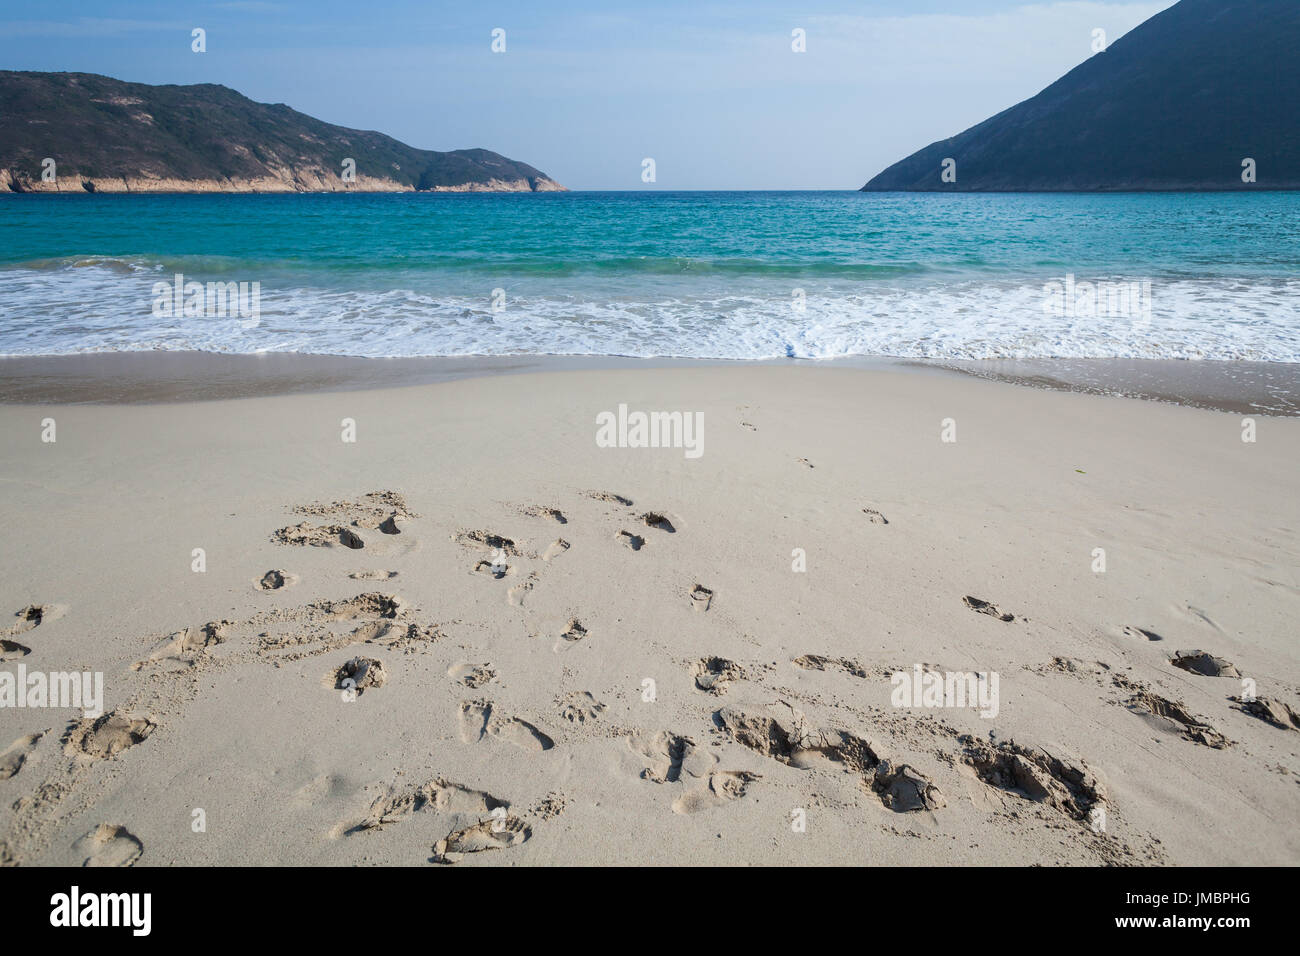 HONG KONG - JANUARY 10, 2015: Beautiful beach in Sai Kung, Hong Kong, China Stock Photo